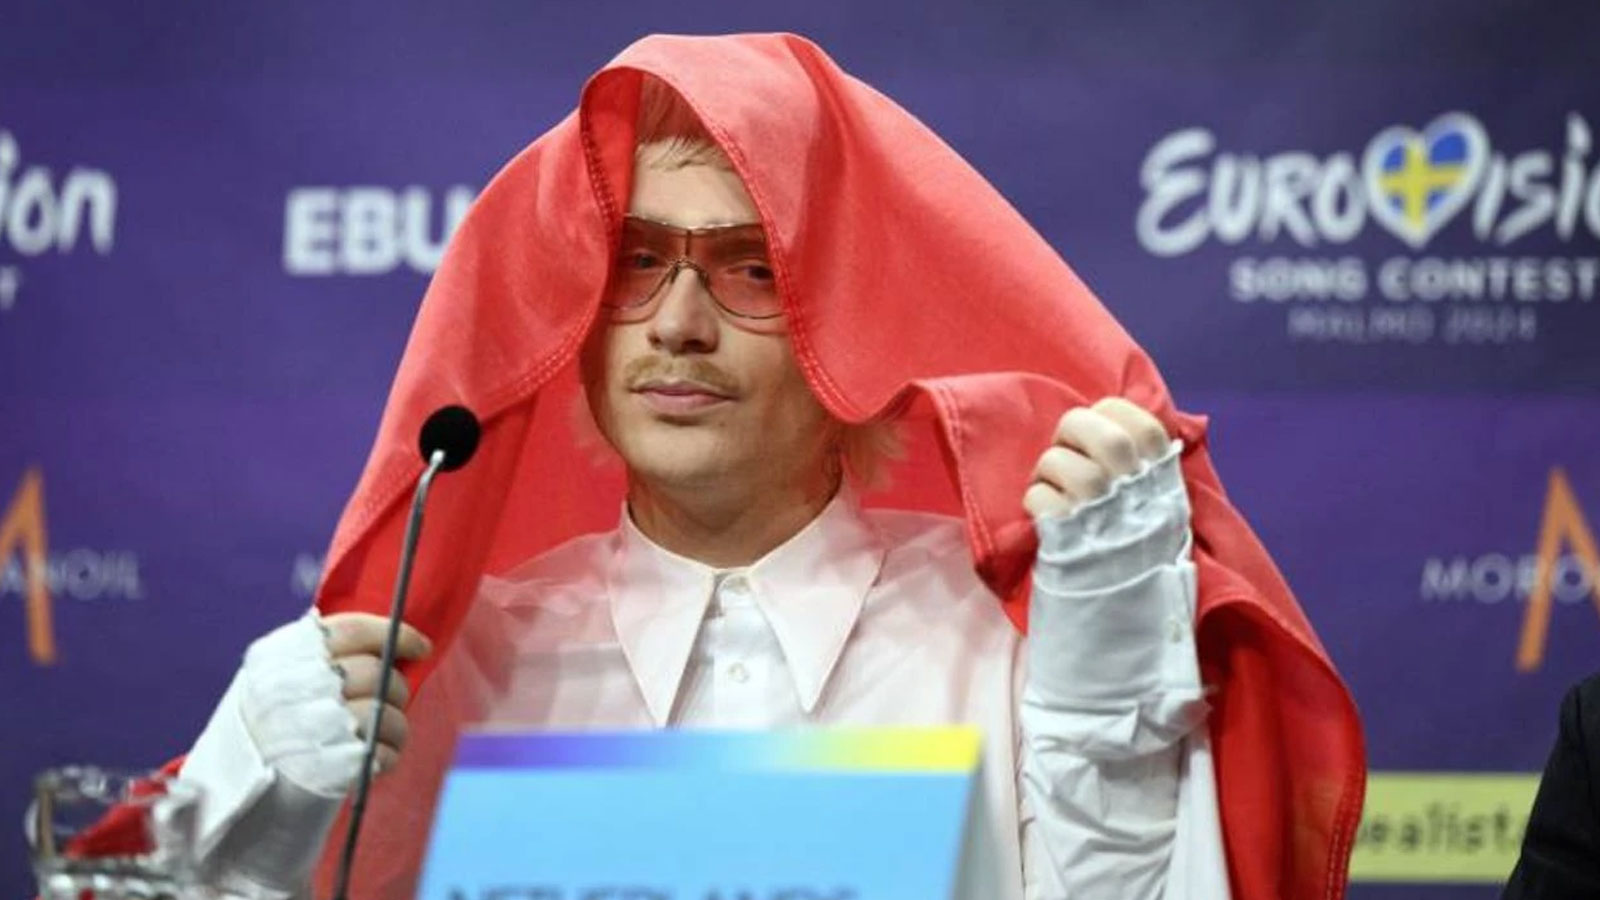 Eurovision'a saatler kala şoke eden diskalifiye! Tepkiler çığ gibi büyüyor